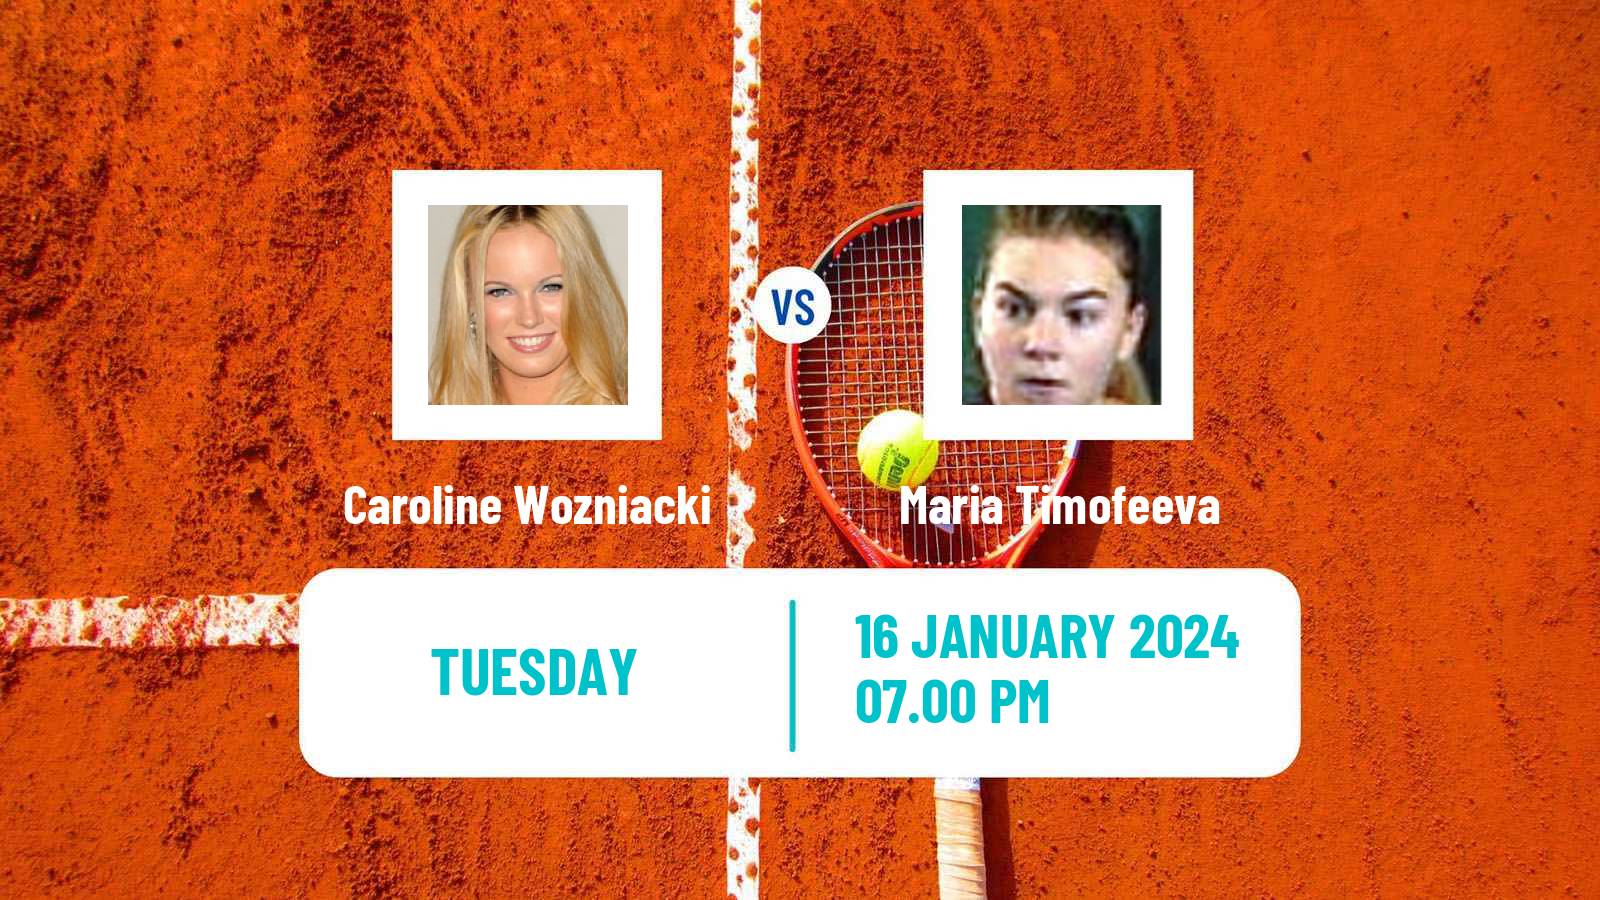 Tennis WTA Australian Open Caroline Wozniacki - Maria Timofeeva